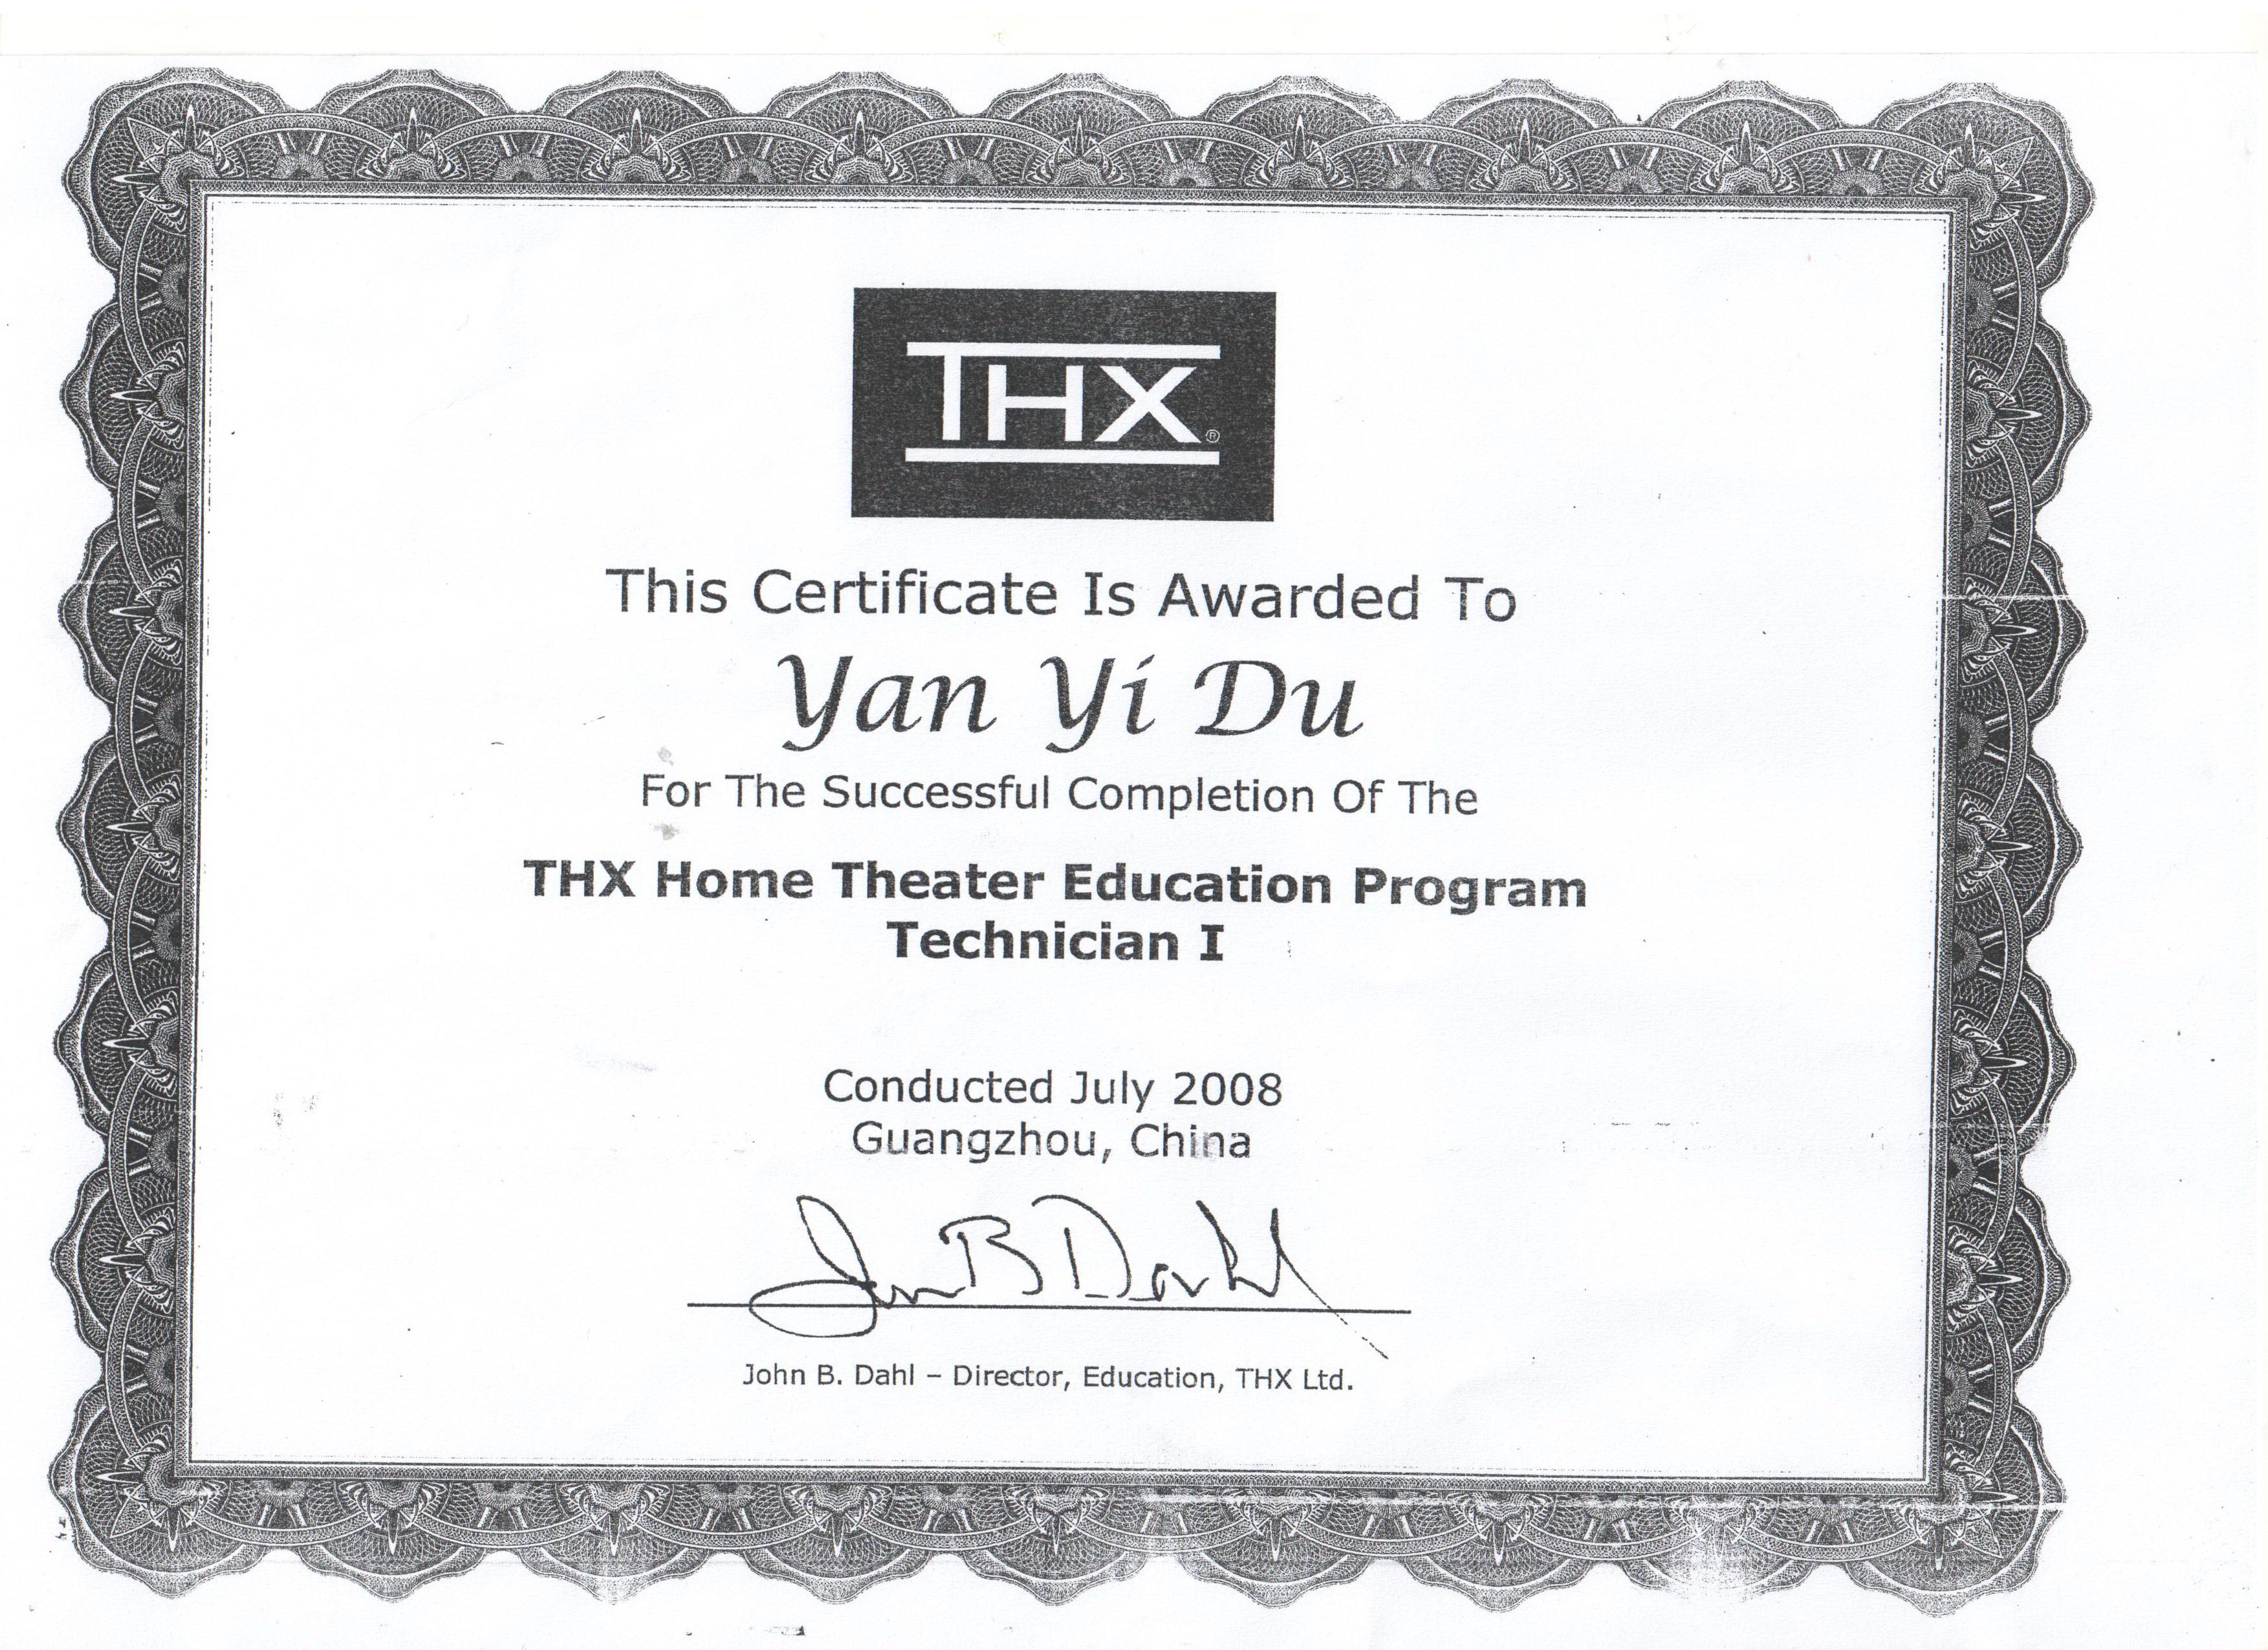 2008杜延奕获得“THX家庭影院教育”一级工程师称号